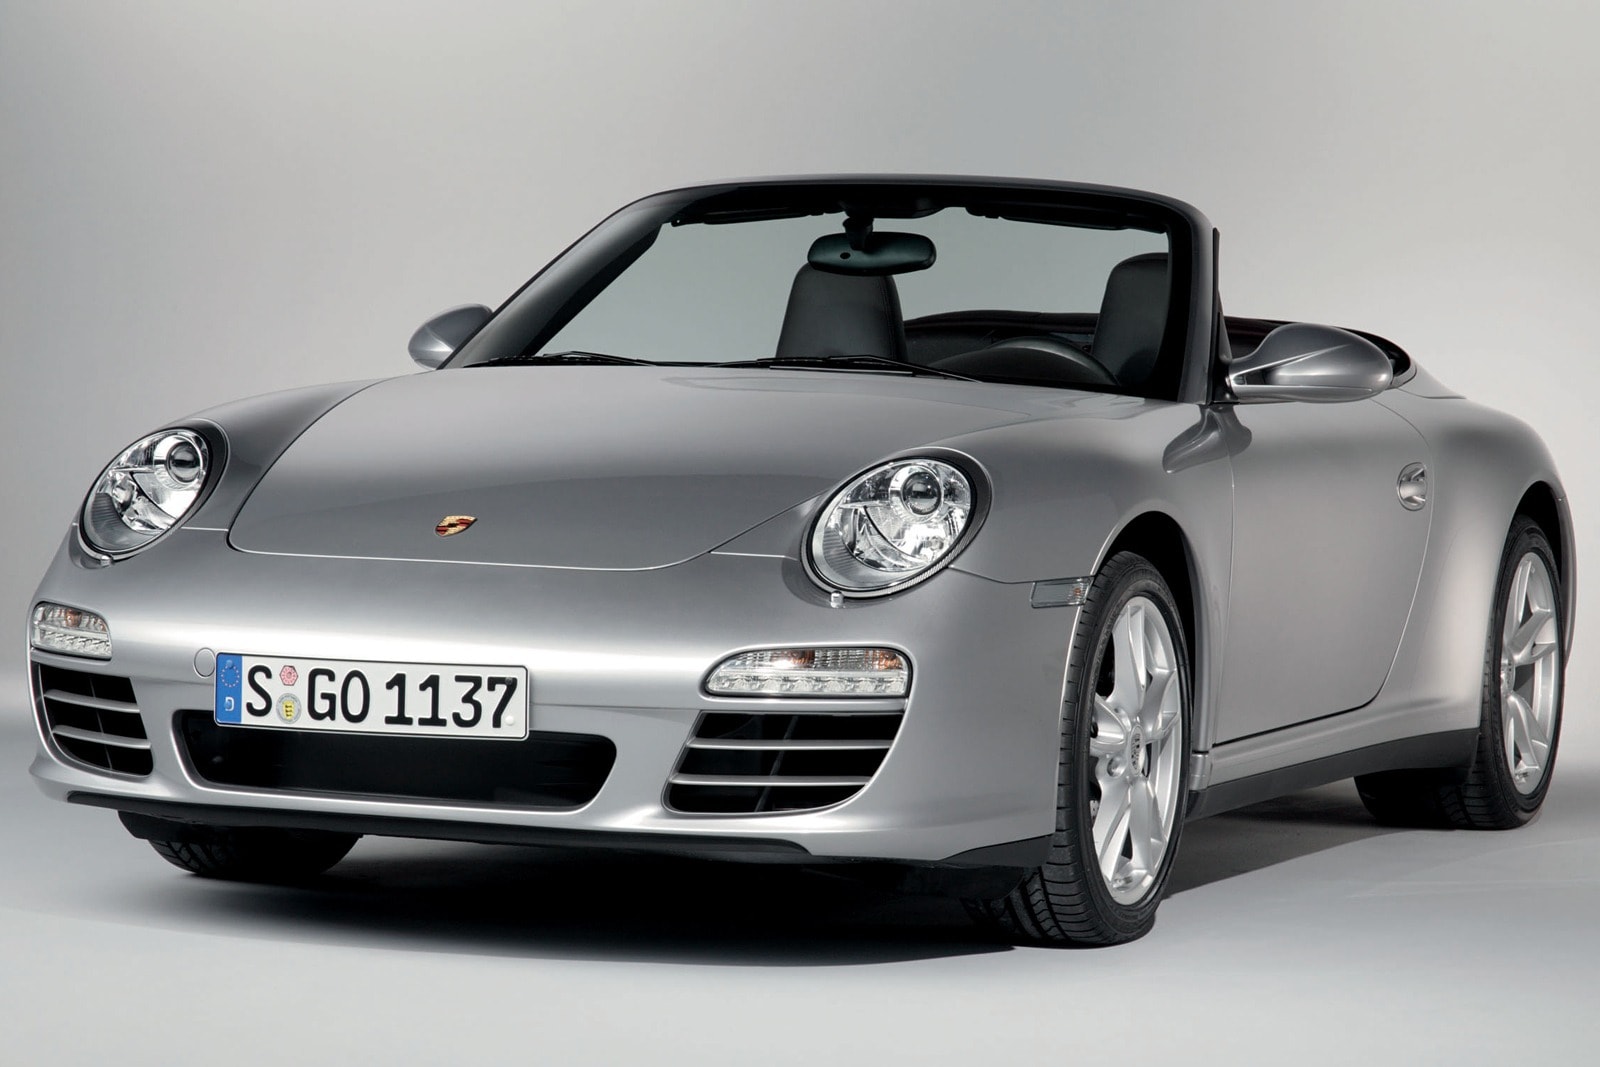 2010 Porsche 911 Review & Ratings | Edmunds